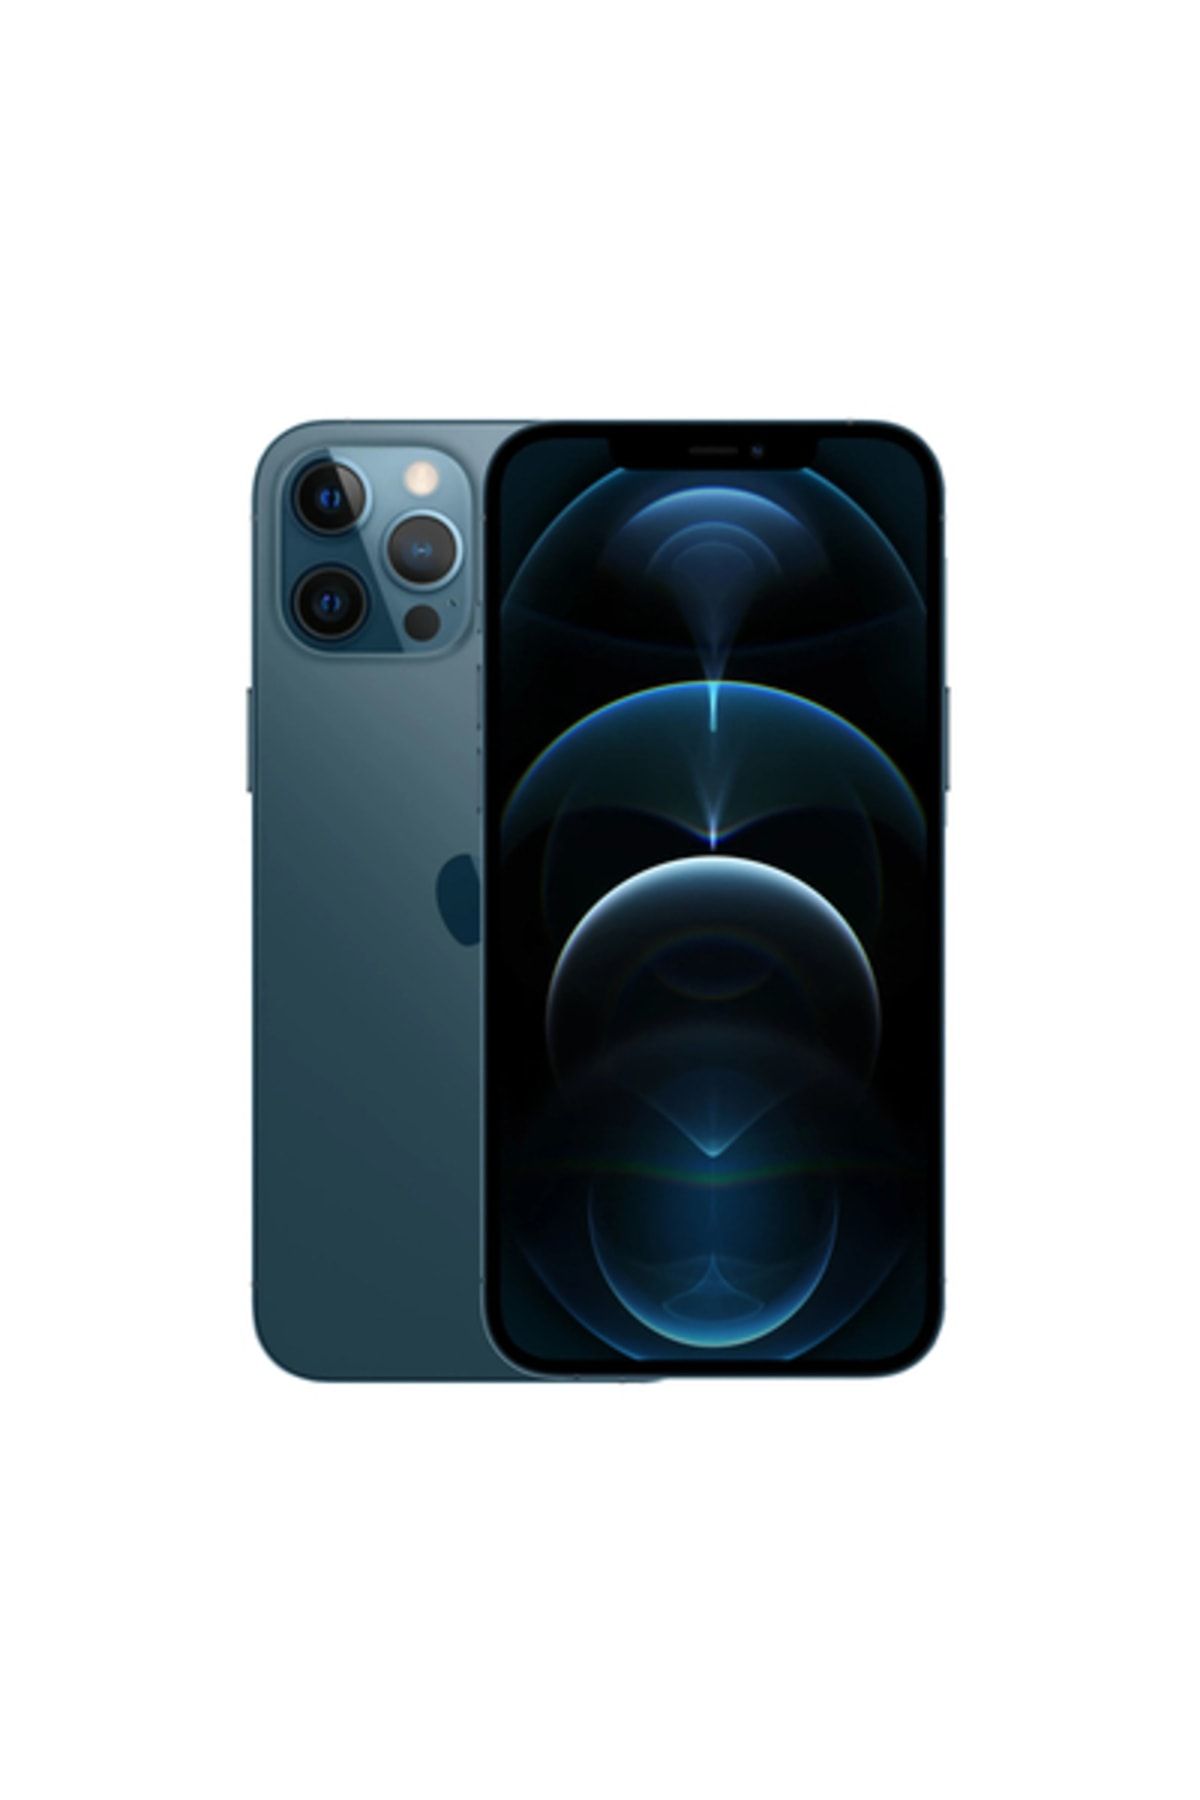 Apple Yenilenmiş iPhone 12 Pro Max 256 GB Pasifik Mavisi 256 GB Pasifik Mavisi B Grade